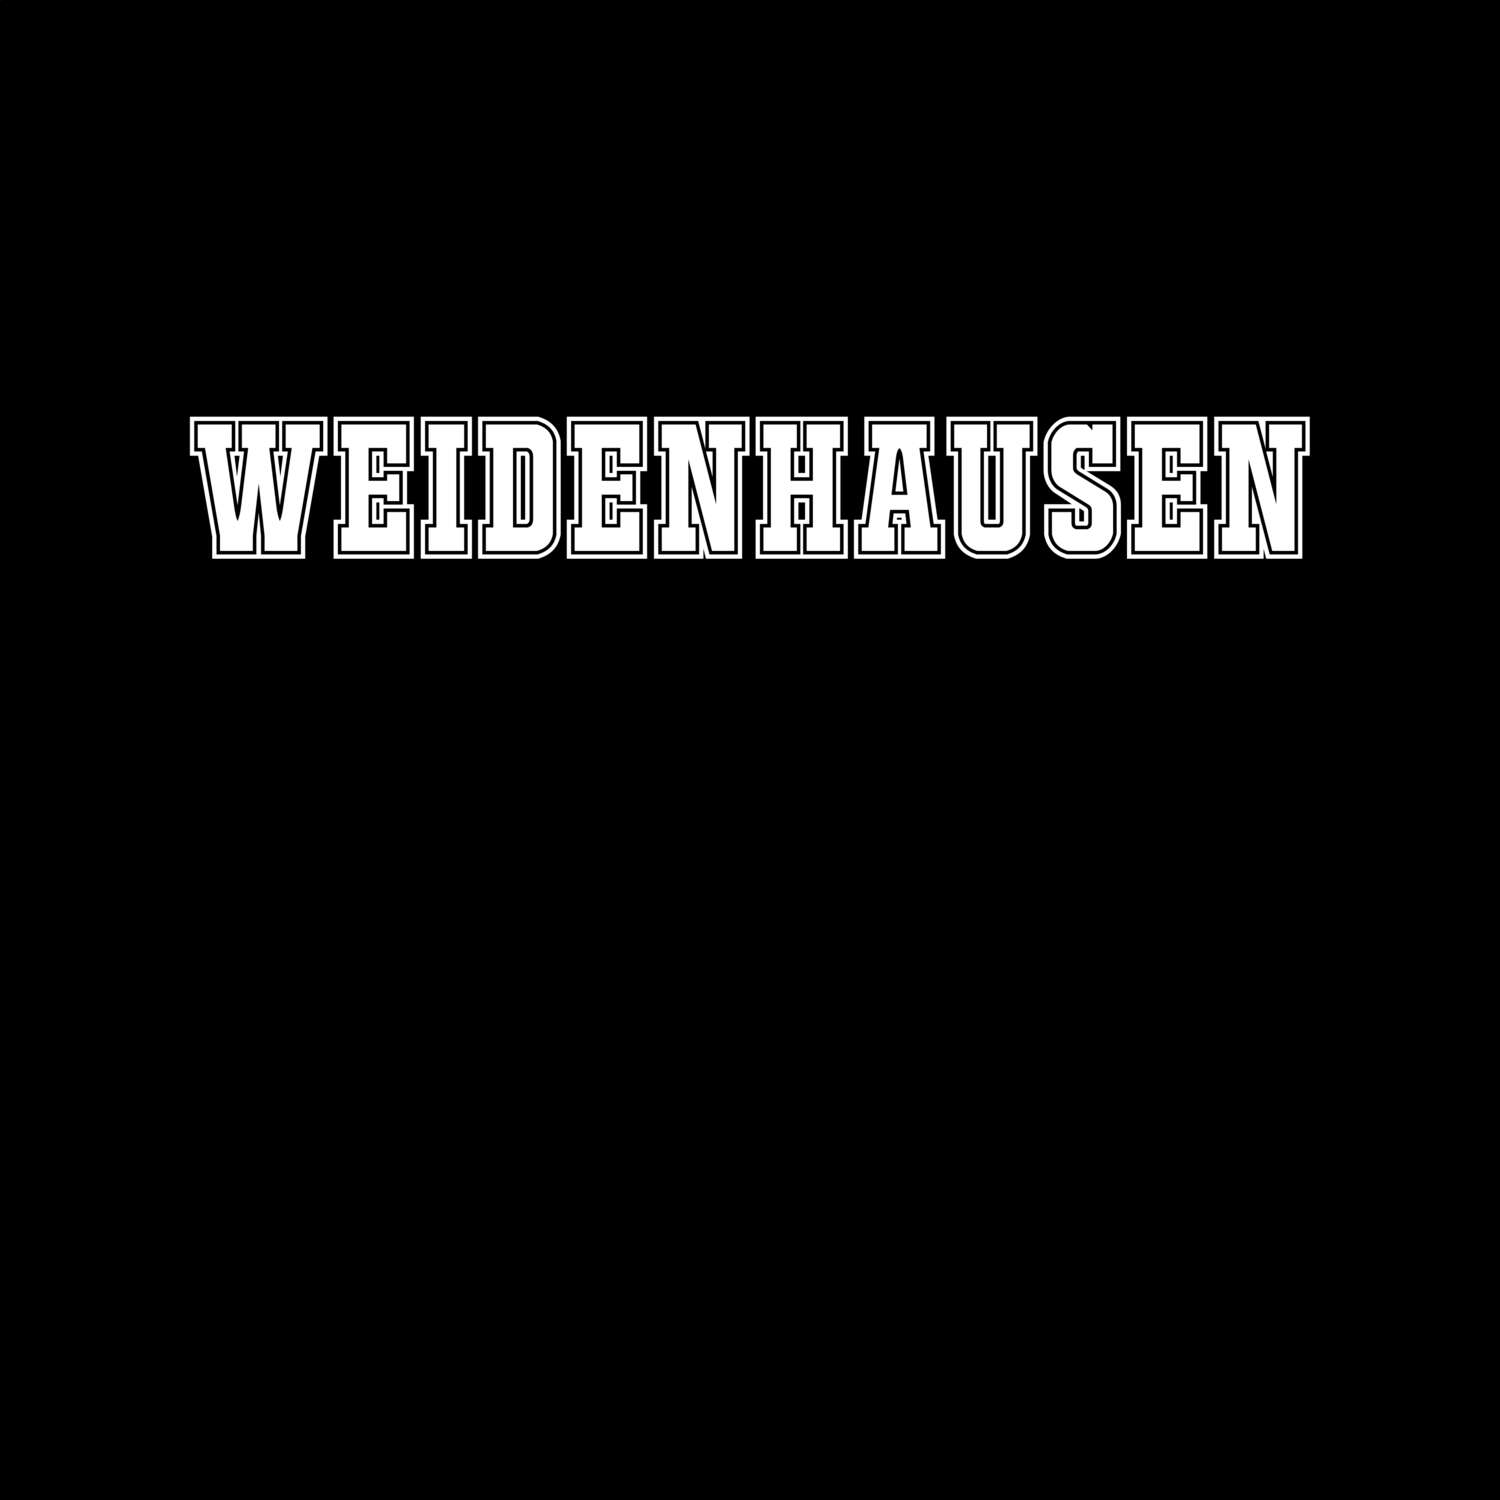 Weidenhausen T-Shirt »Classic«